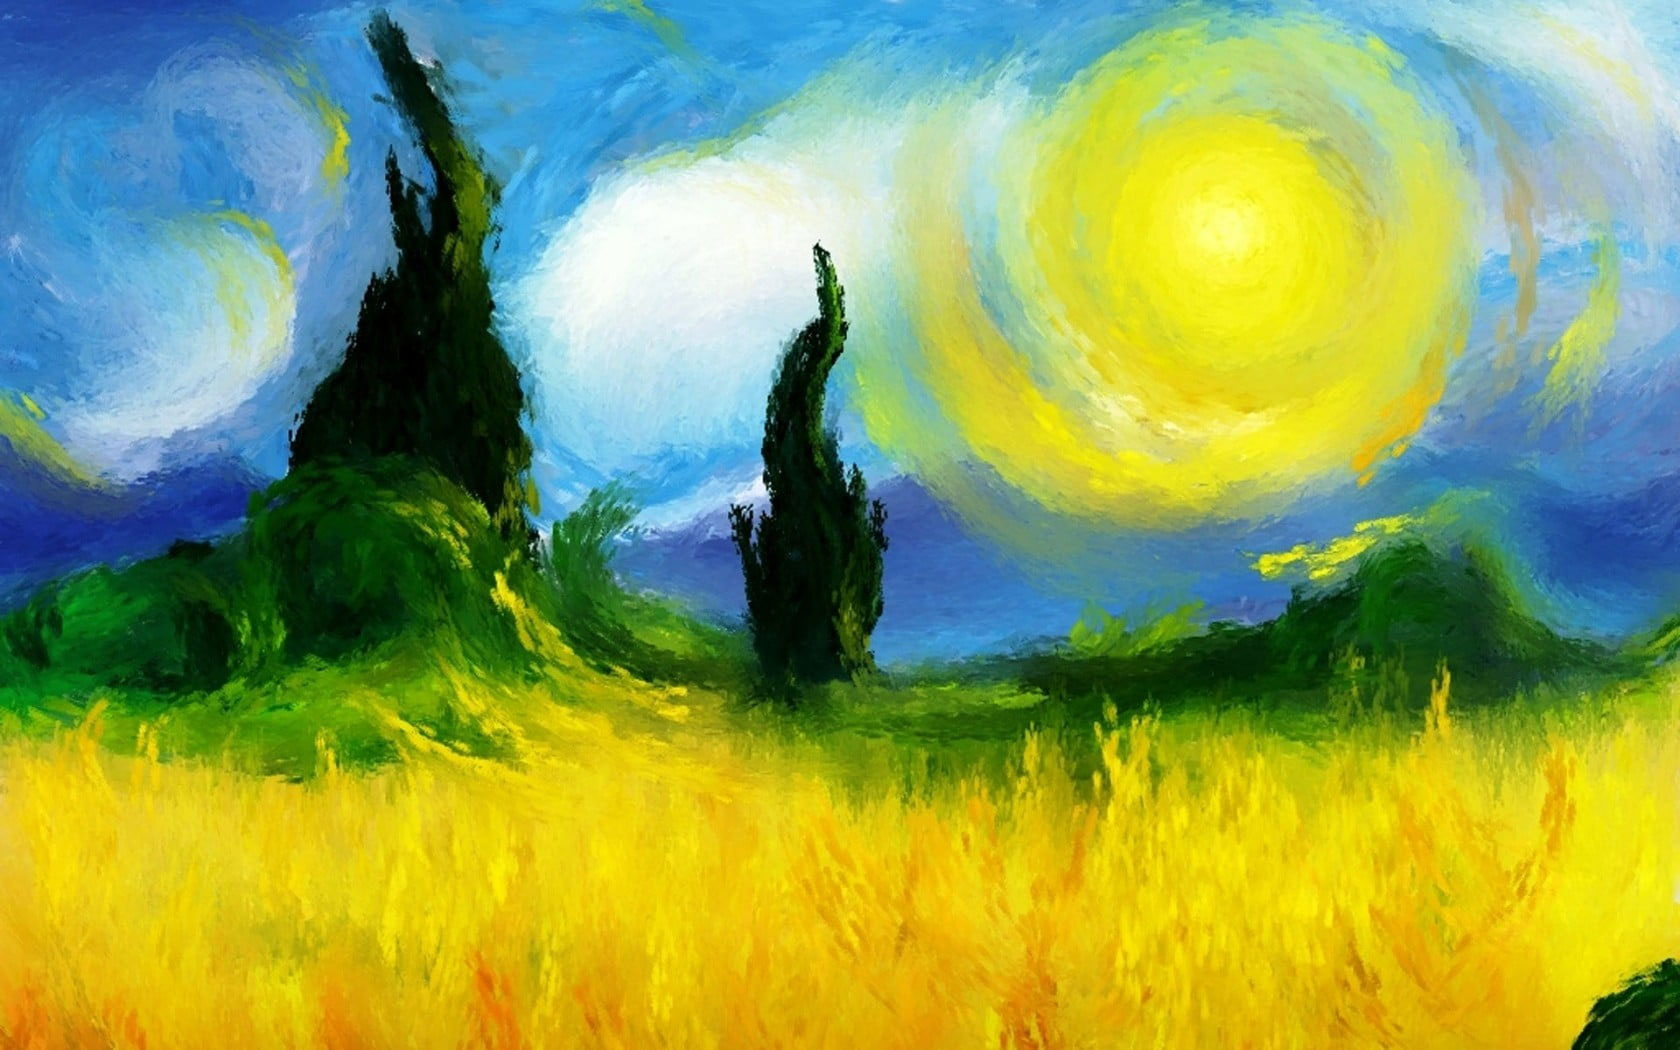 Surreal wallpaper, artwork, painting, Vincent van Gogh, multi colored